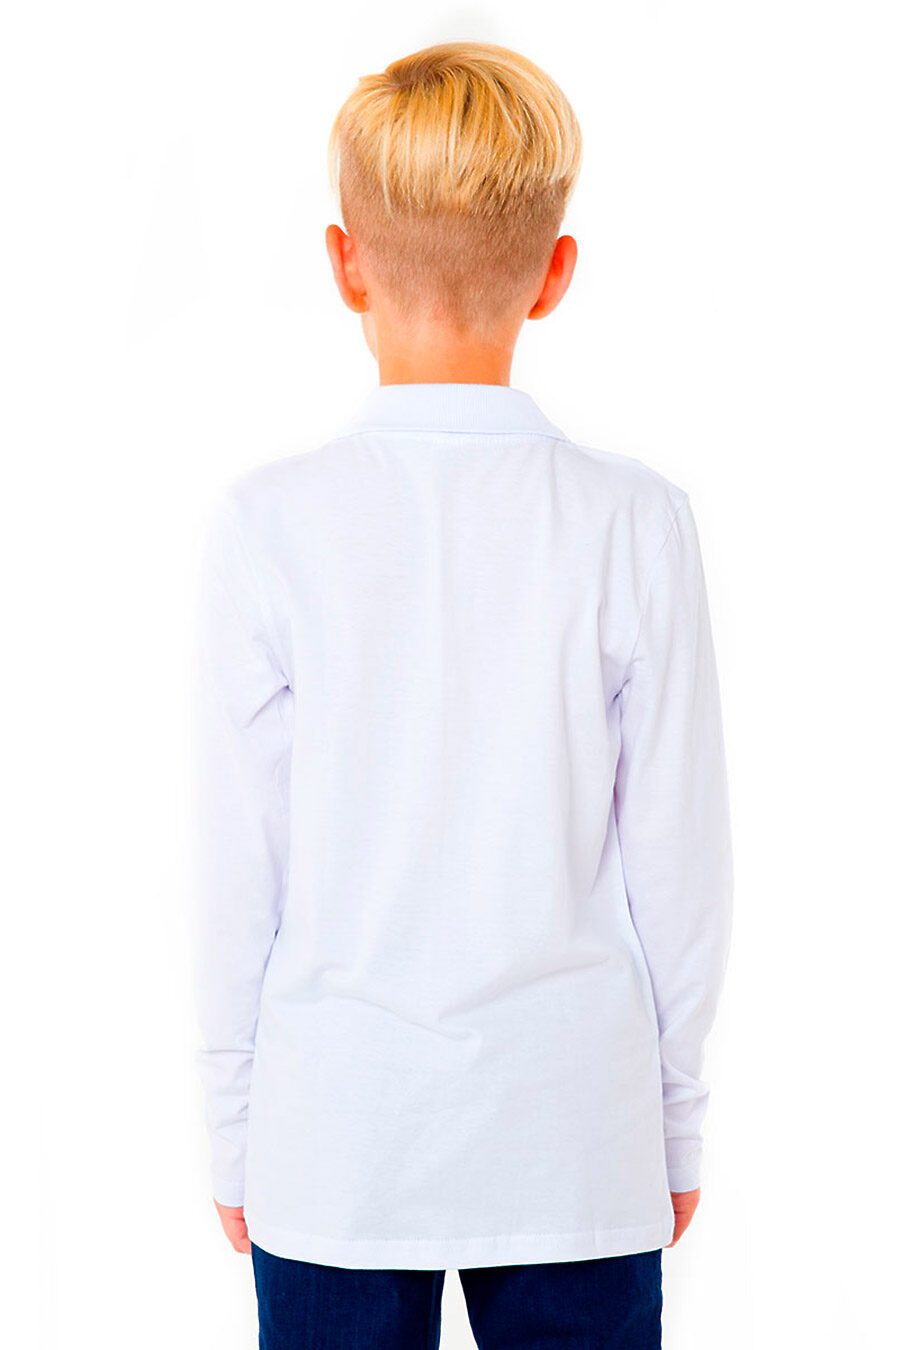 Фуфайка для мальчиков N.O.A. 684248 купить оптом от производителя. Совместная покупка детской одежды в OptMoyo